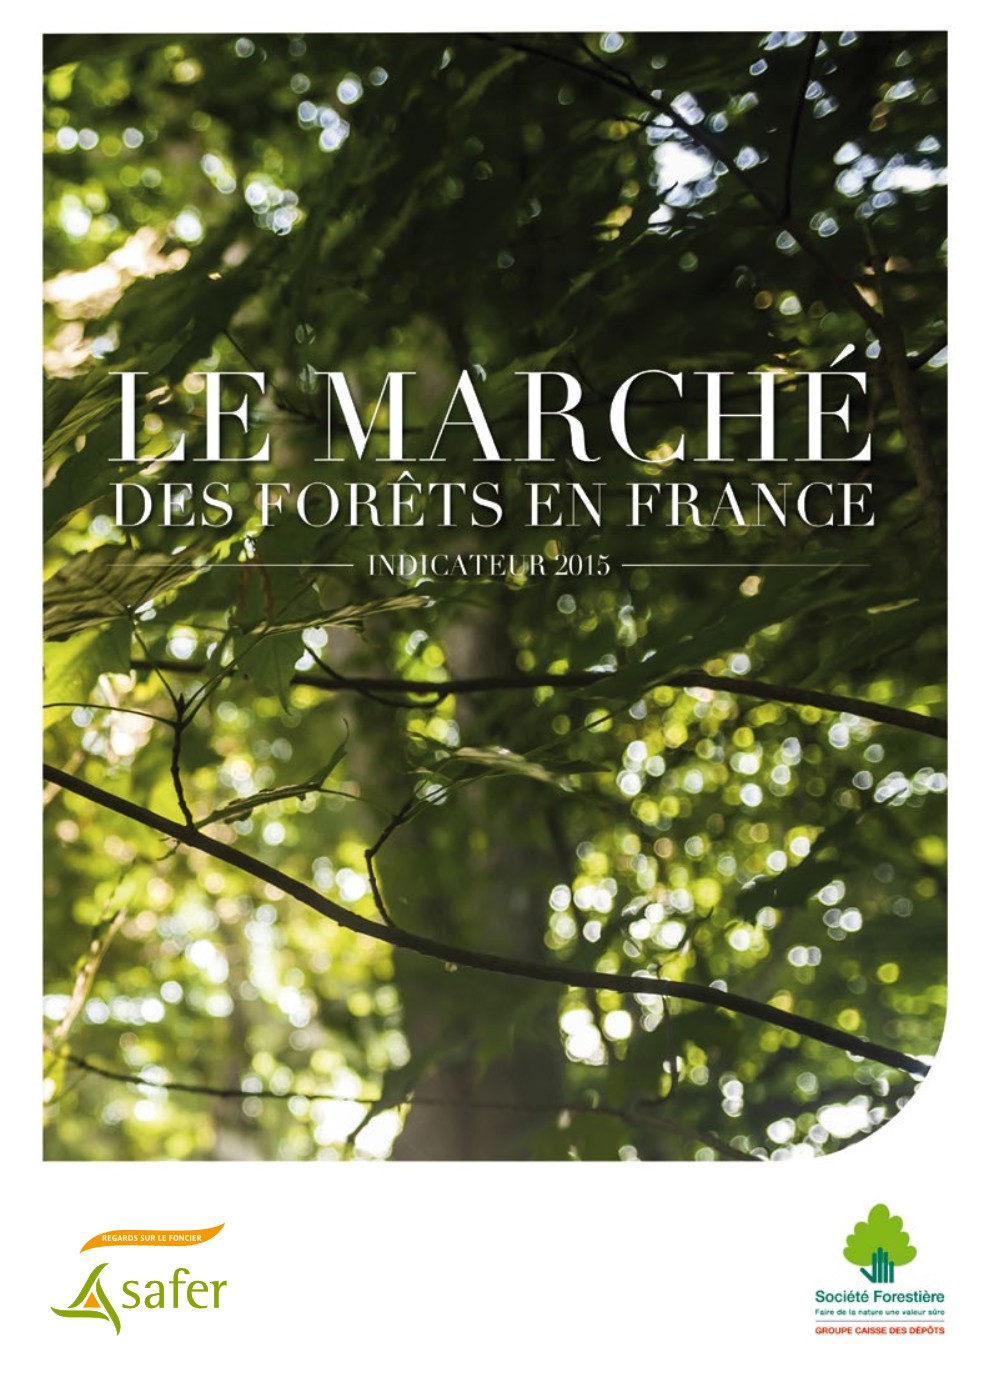 Le marché des forêts en France en 2014 (indicateur 2015) - Société Forestière de la Caisse des Dépôts et FNSafer